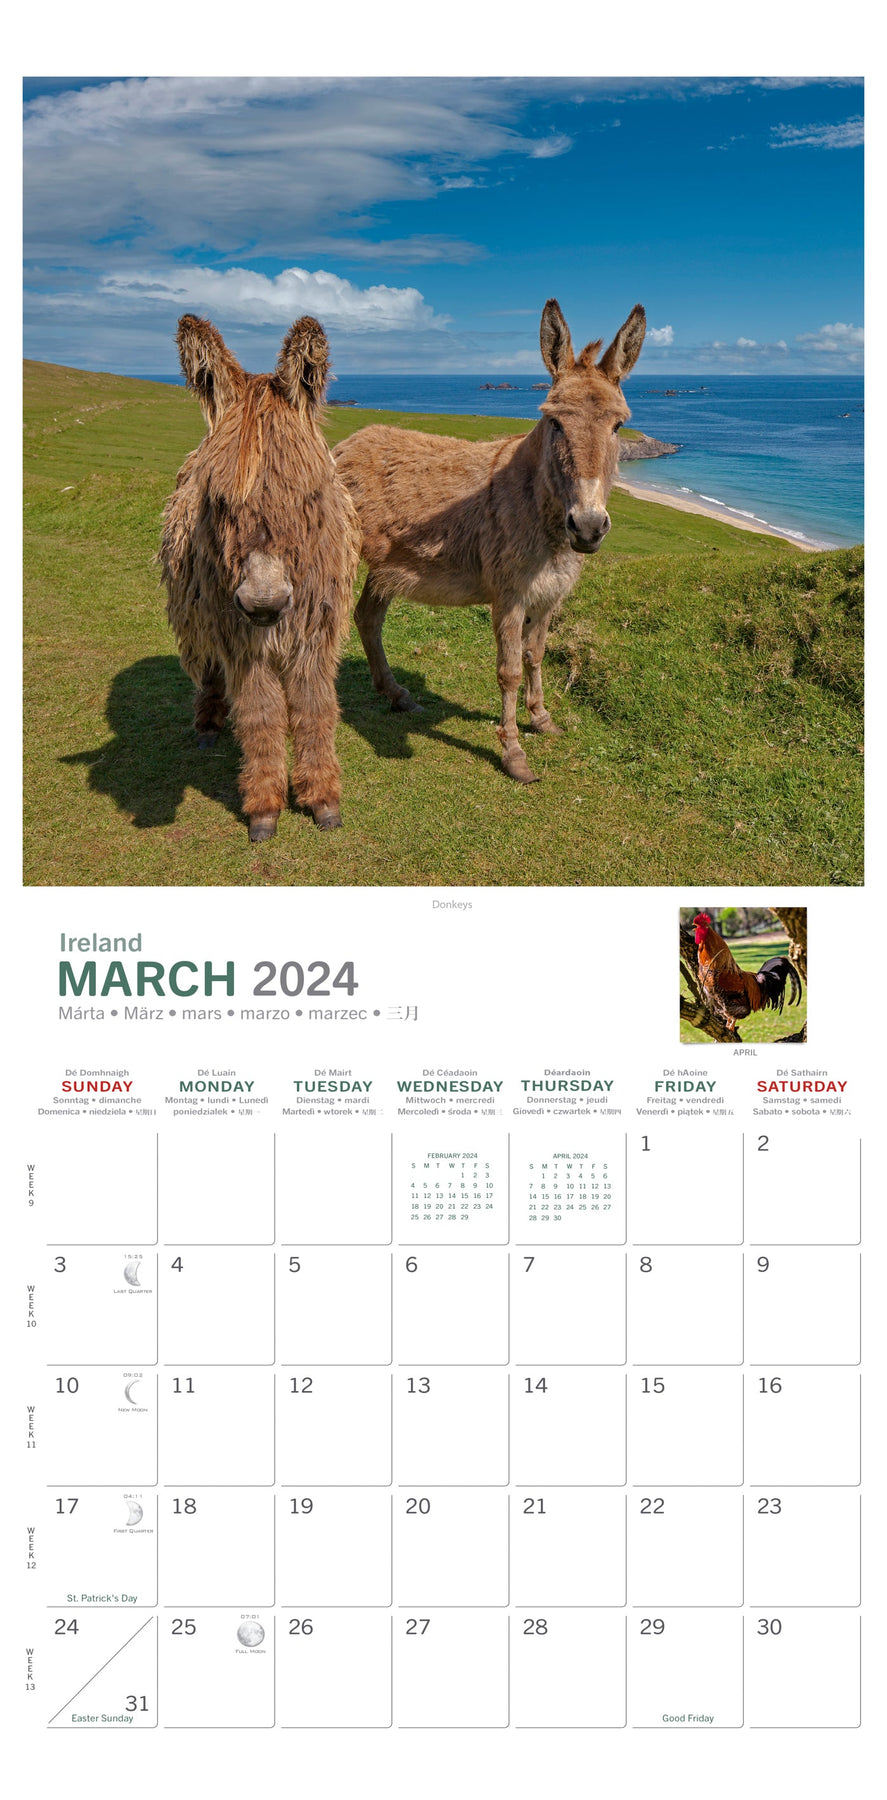 medium-format-calendars-irish-calendars